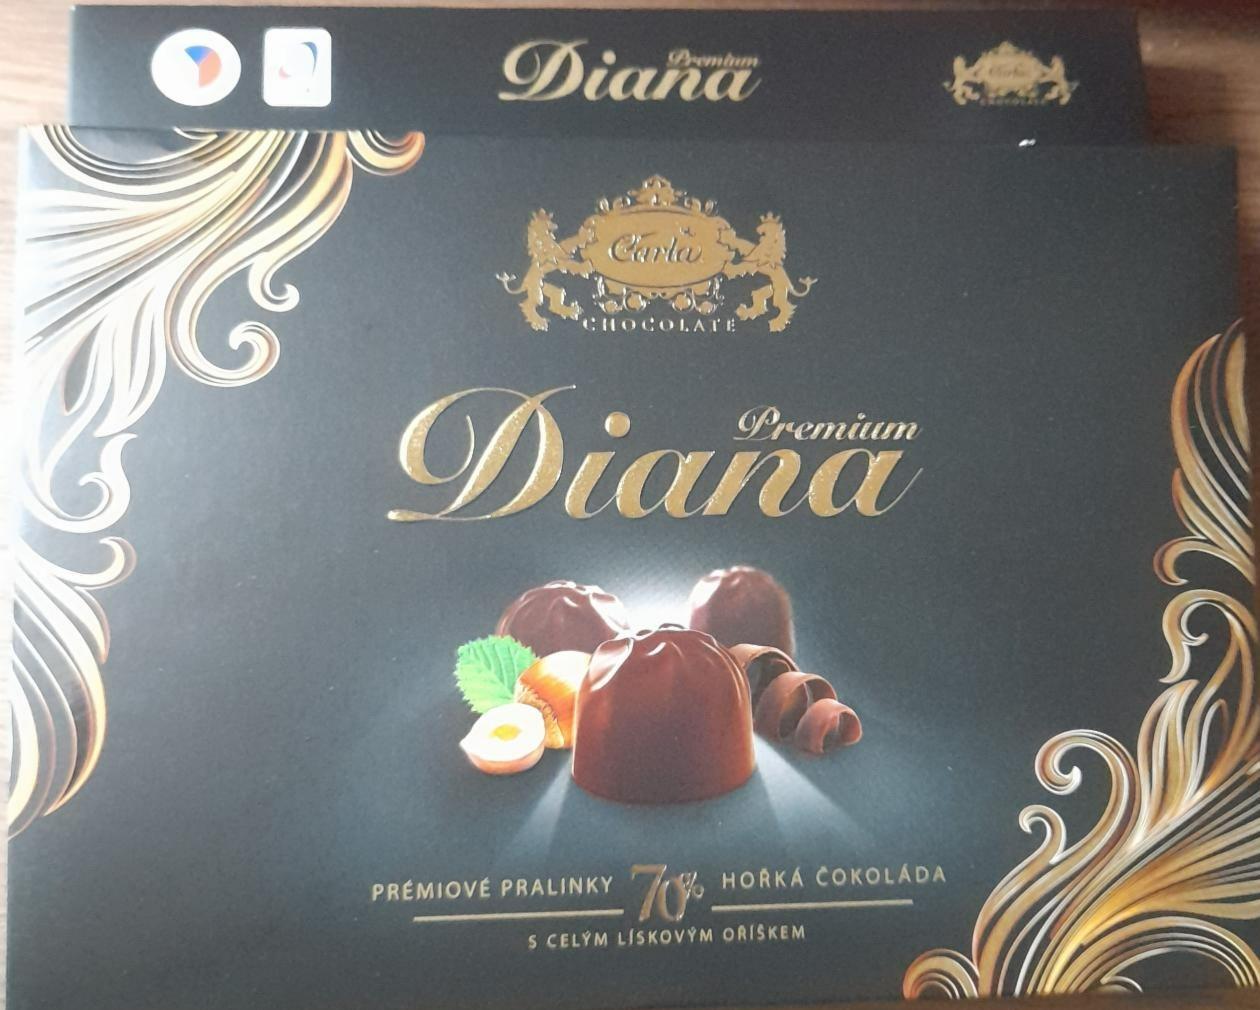 Fotografie - Diana premium 70 % hořká čokoláda